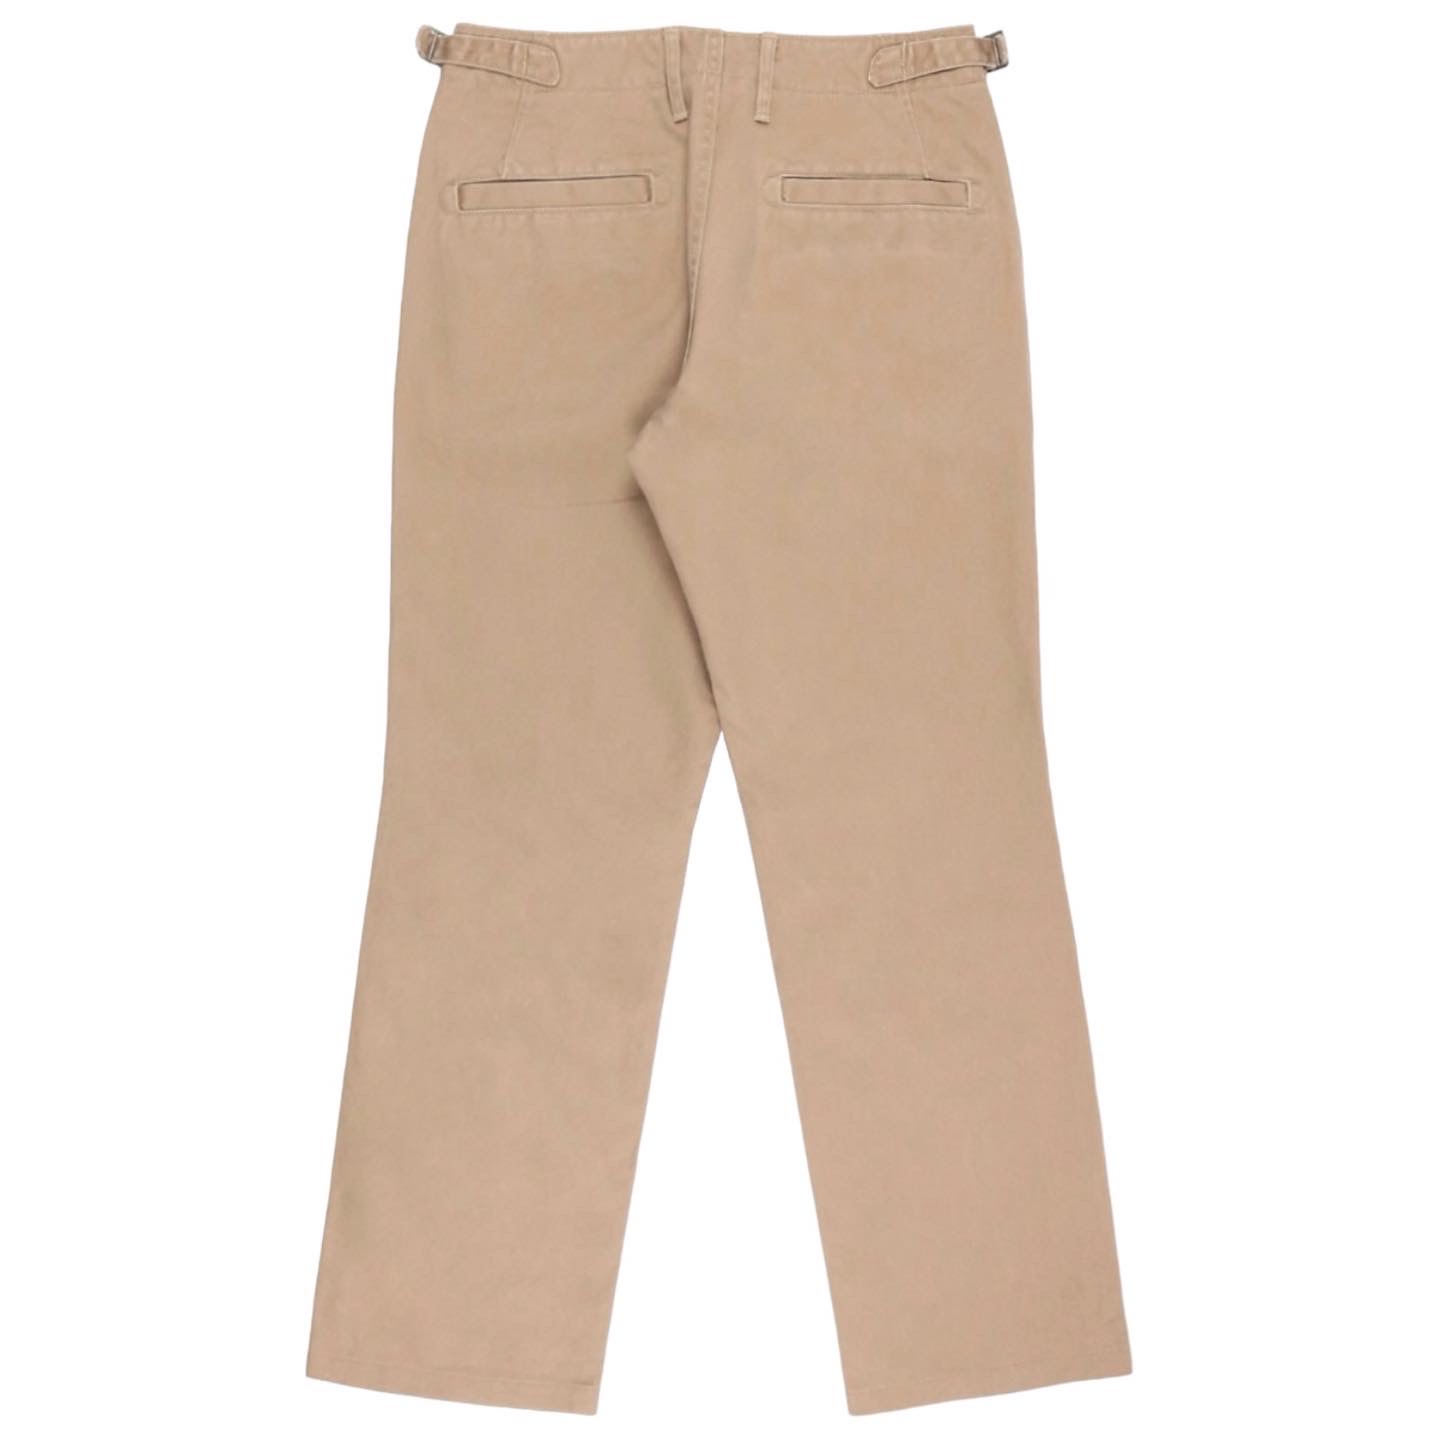 Quadro Japan Khaki Pants Size 30